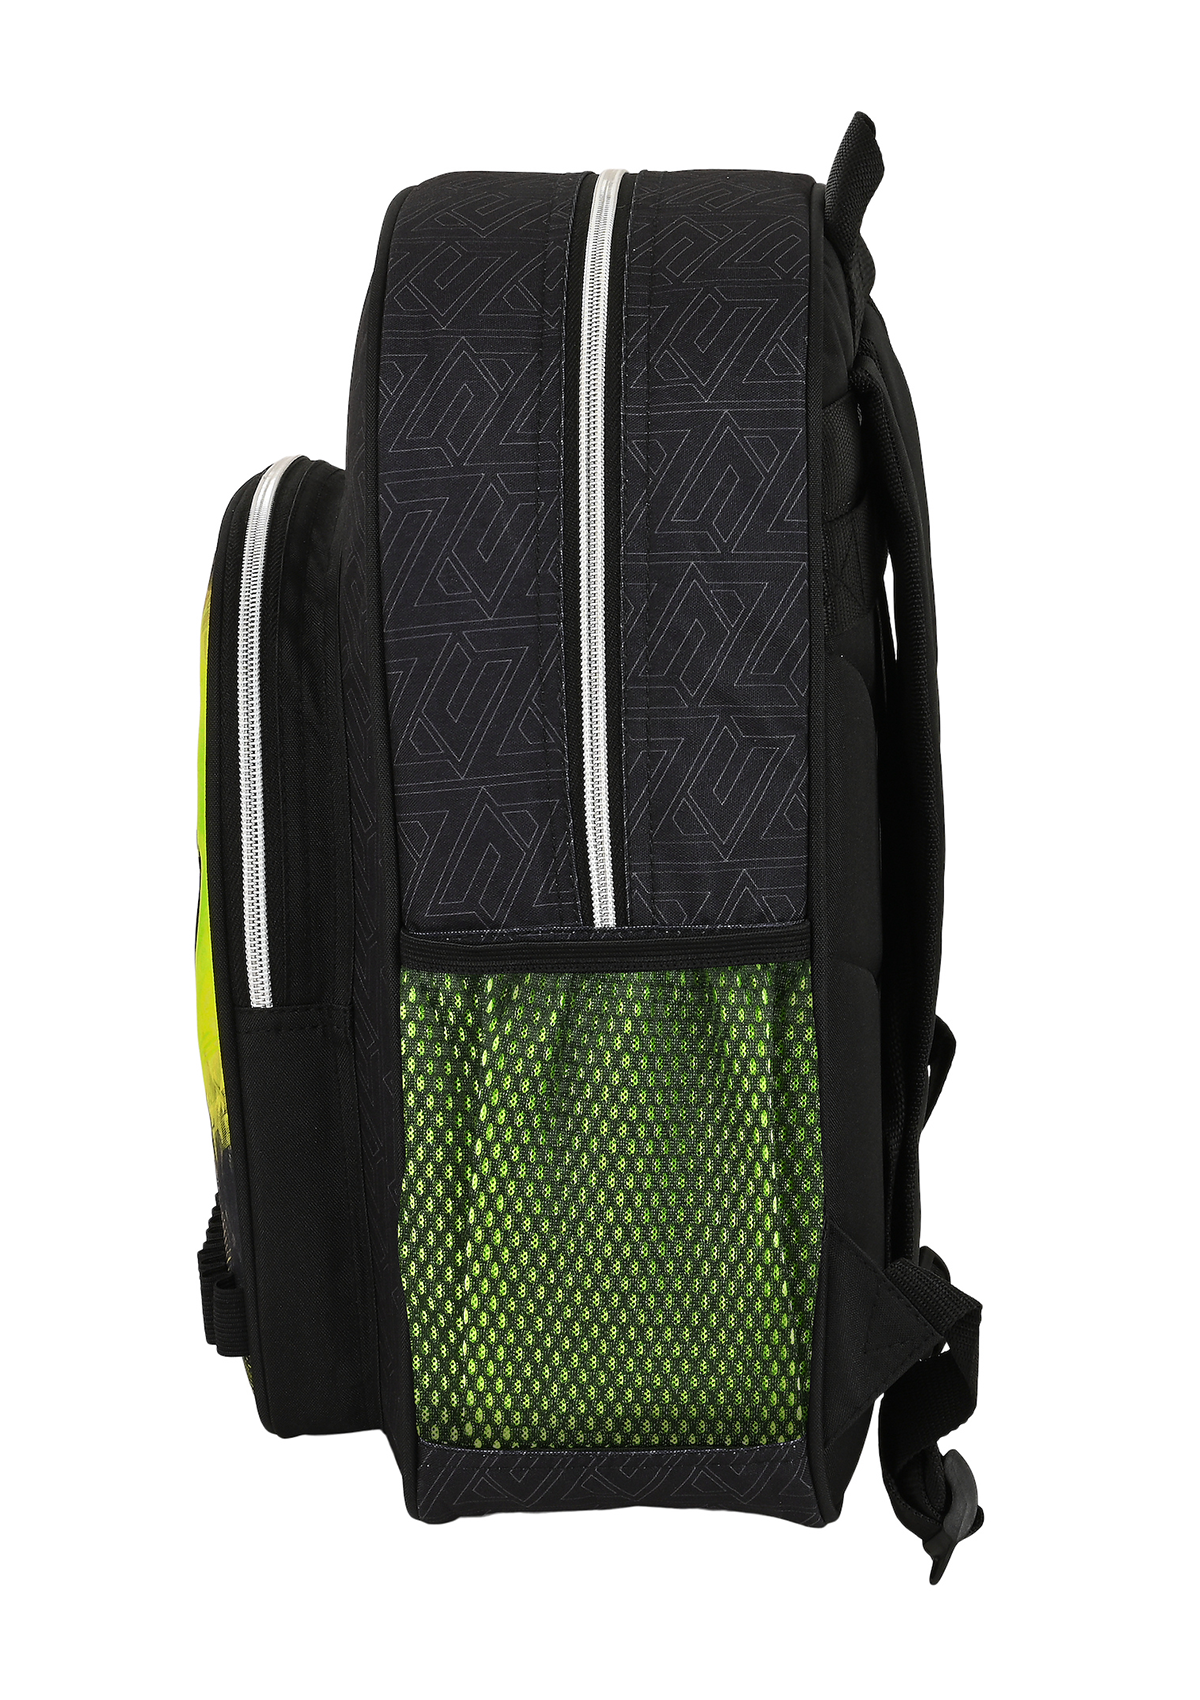 Nerf Junior Backpack